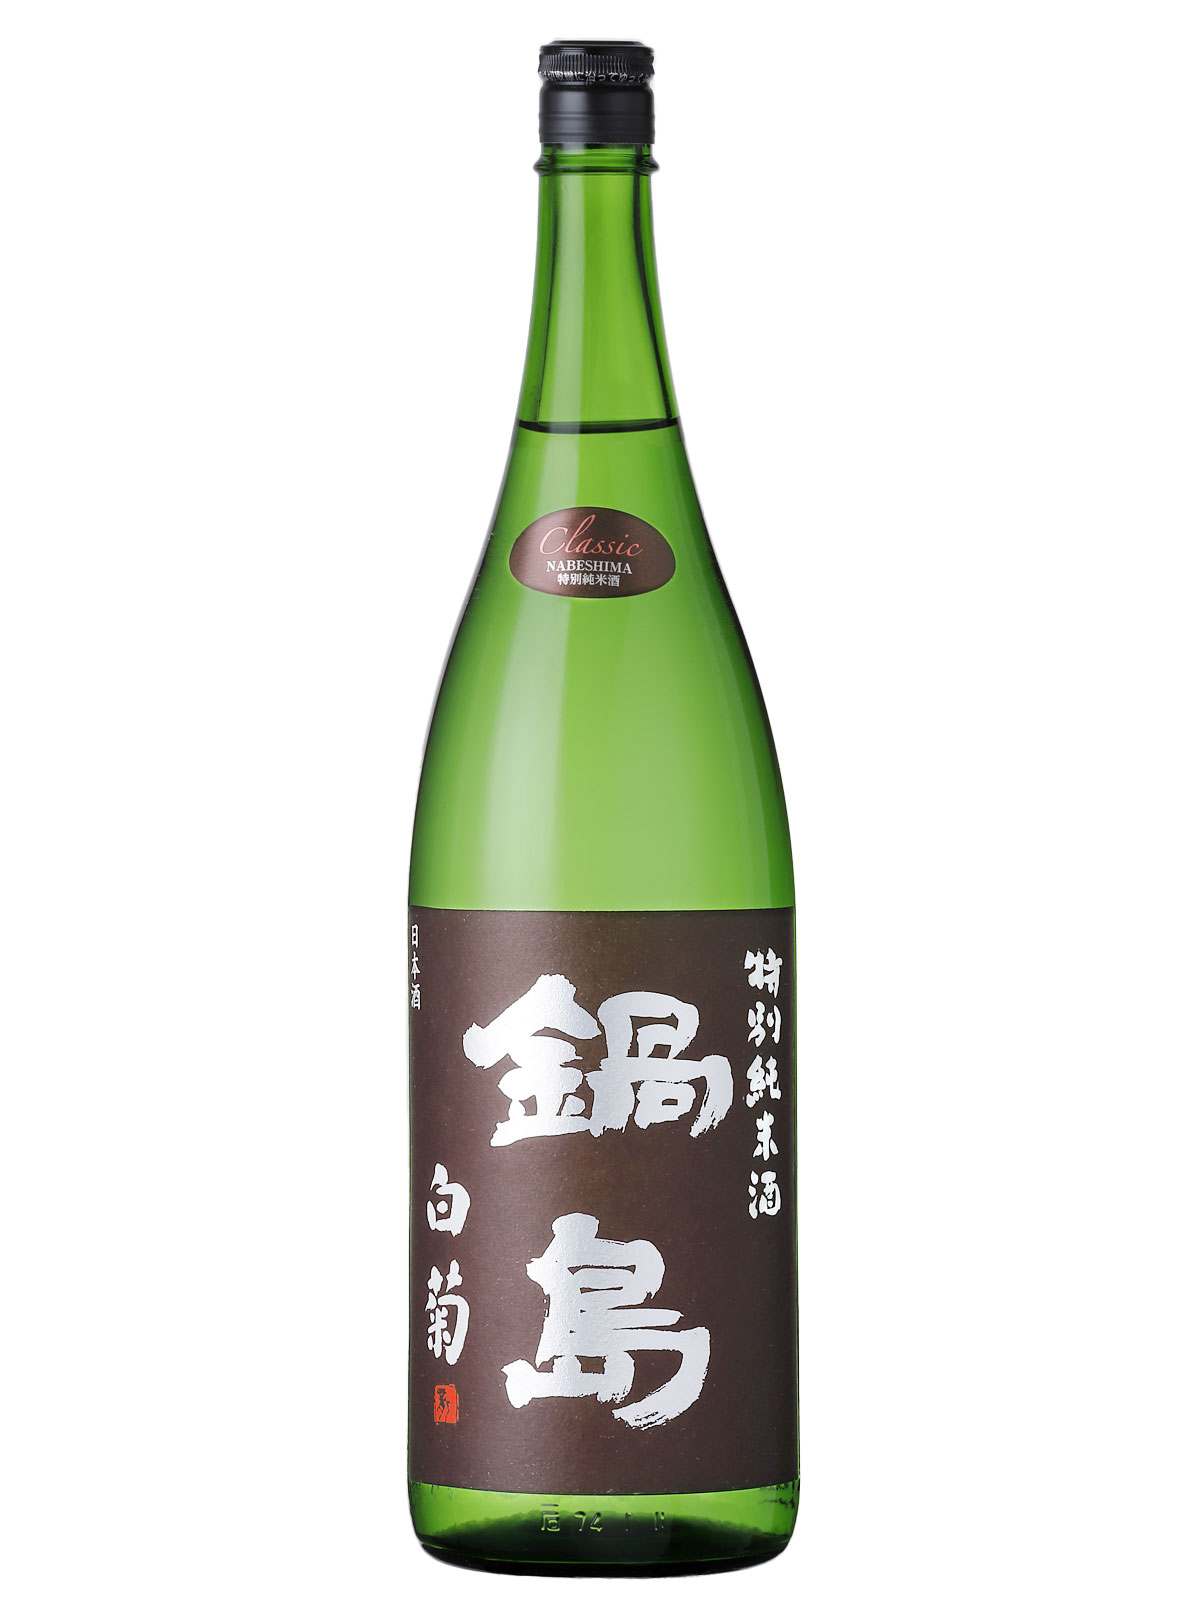 鍋島特別純米酒 Classic 白菊